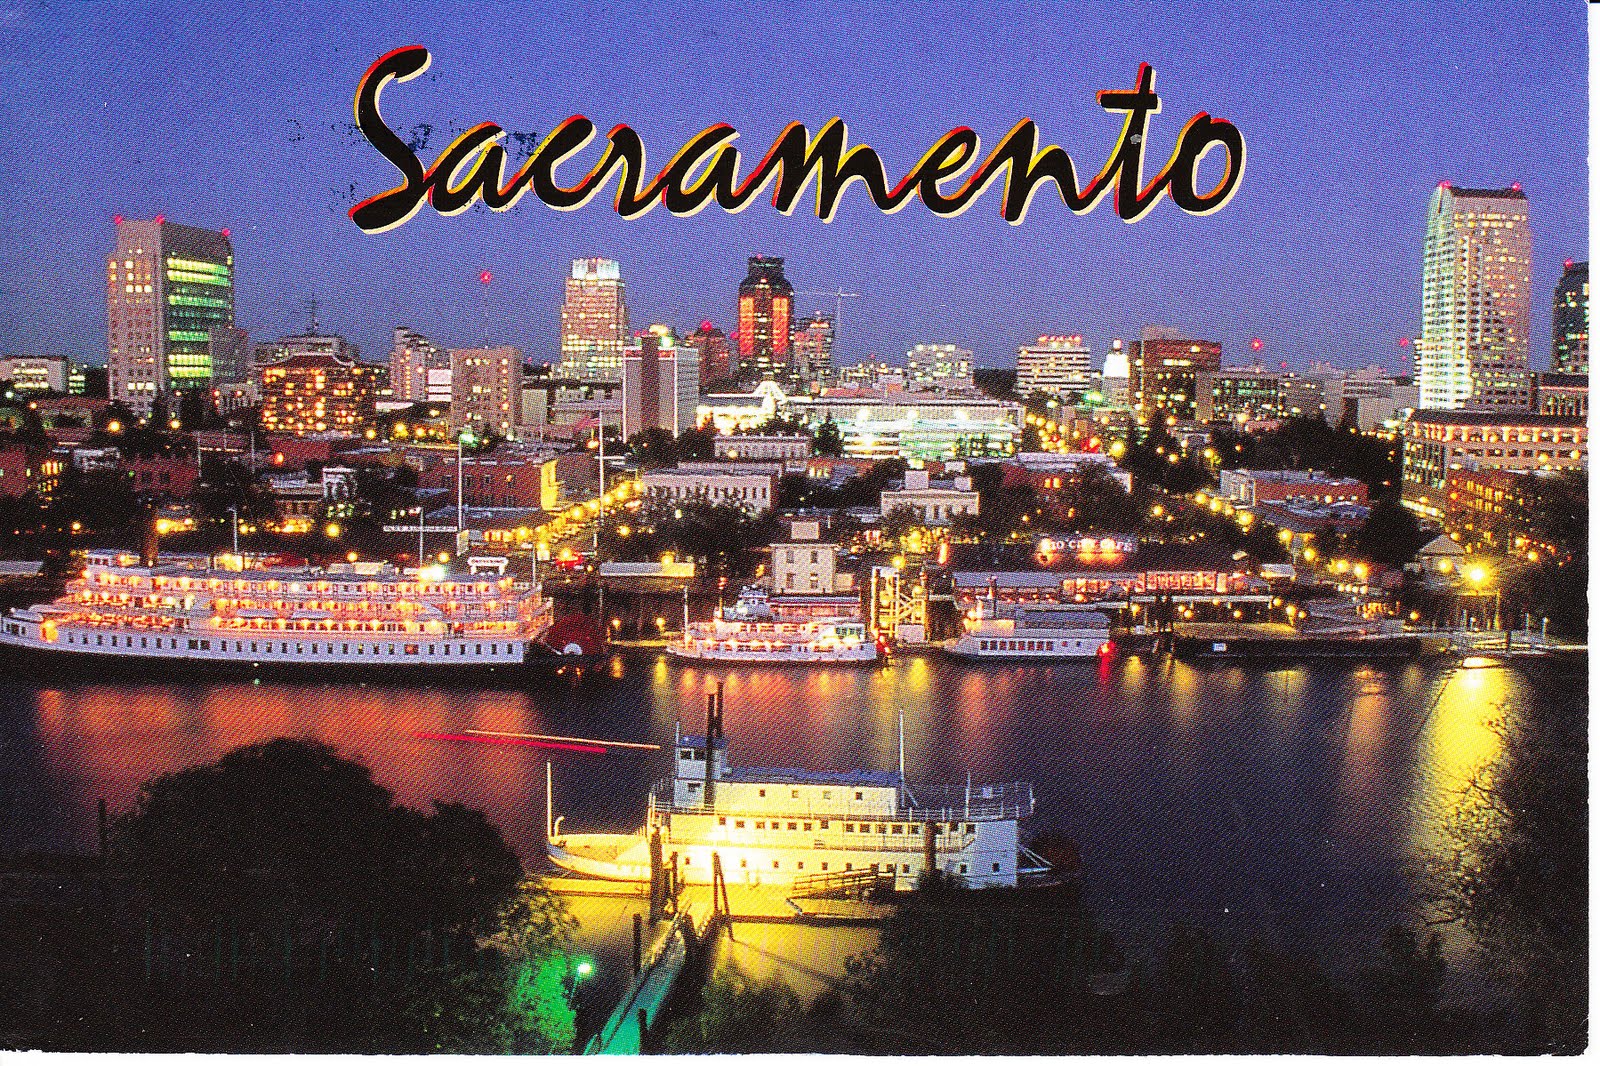 Six Sigma Training Sacramento, California - SixSigma.us. 